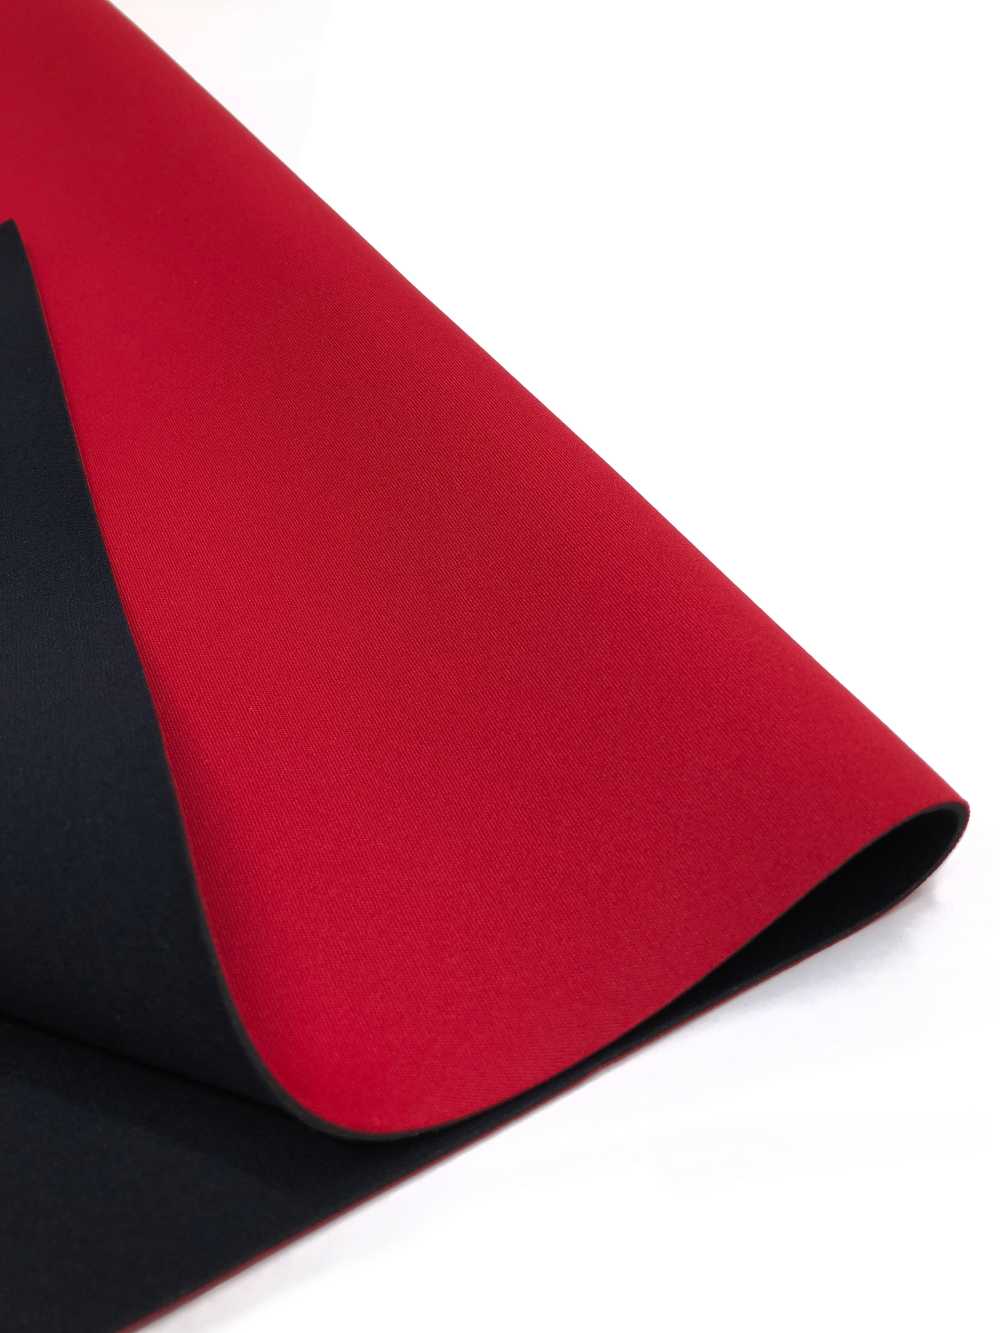 31039 HM AL Rouge/PS Noir 95 × 170cm[Fabrication De Textile] Tortue